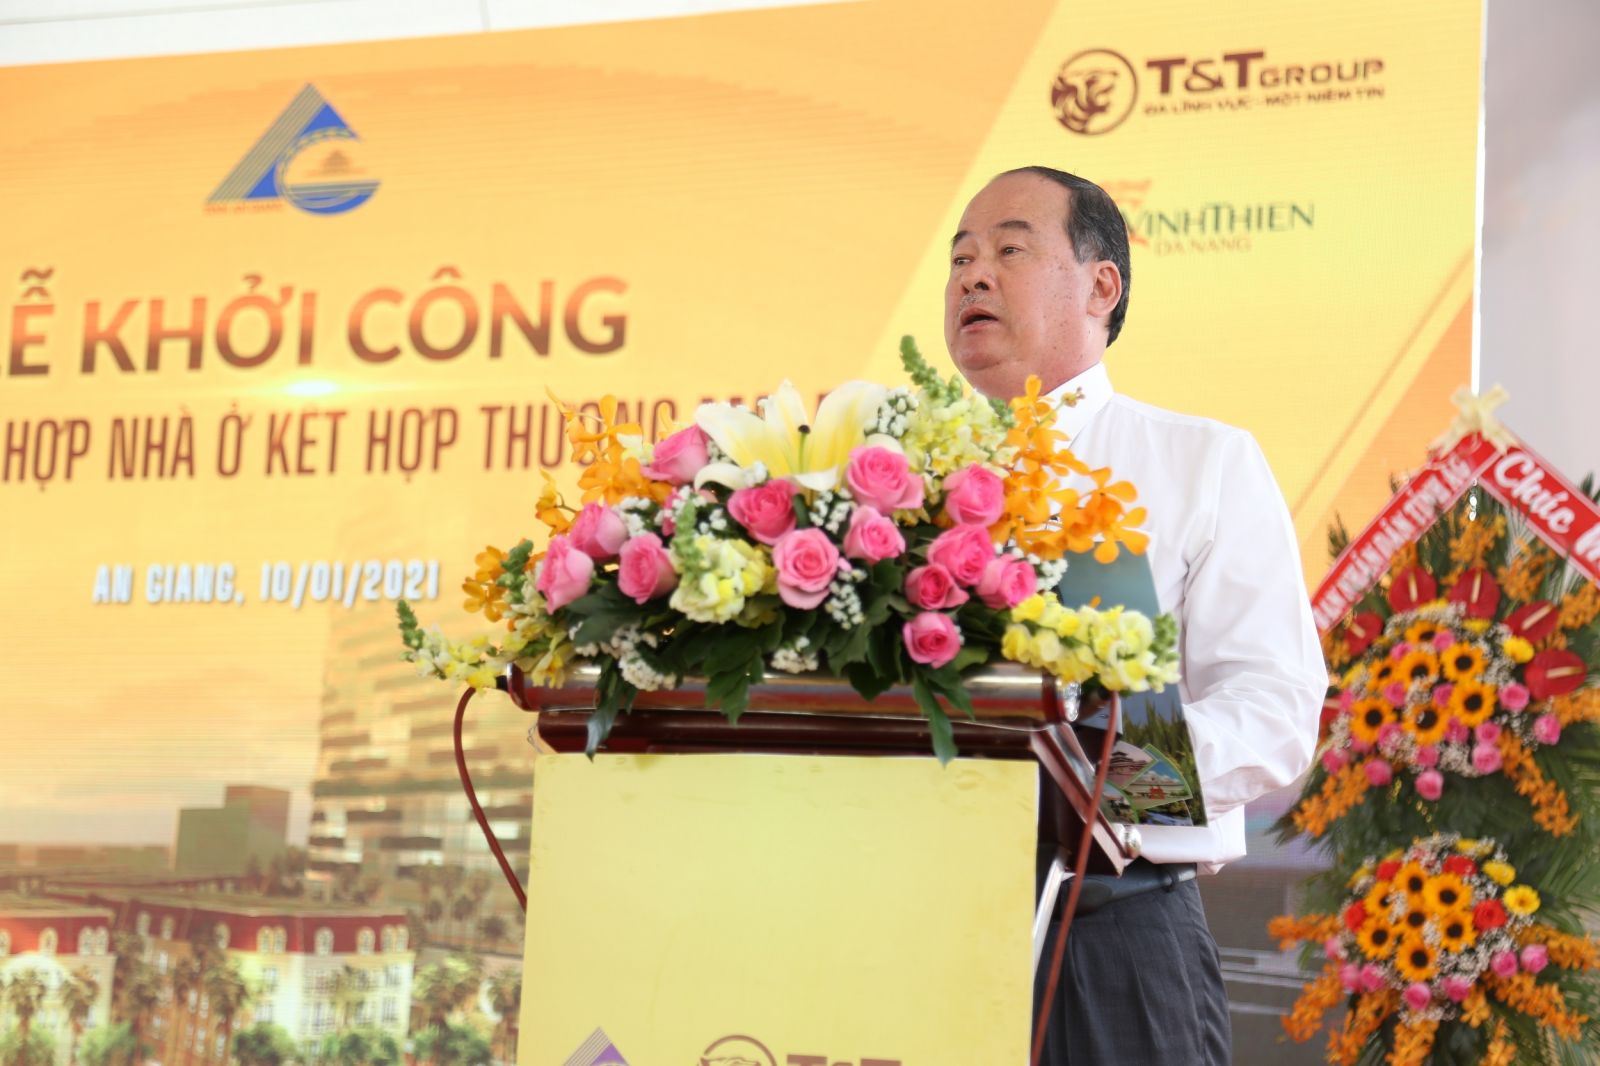 T&T Group khởi công khu phức hợp nhà ở - thương mại dịch vụ tại Long Xuyên